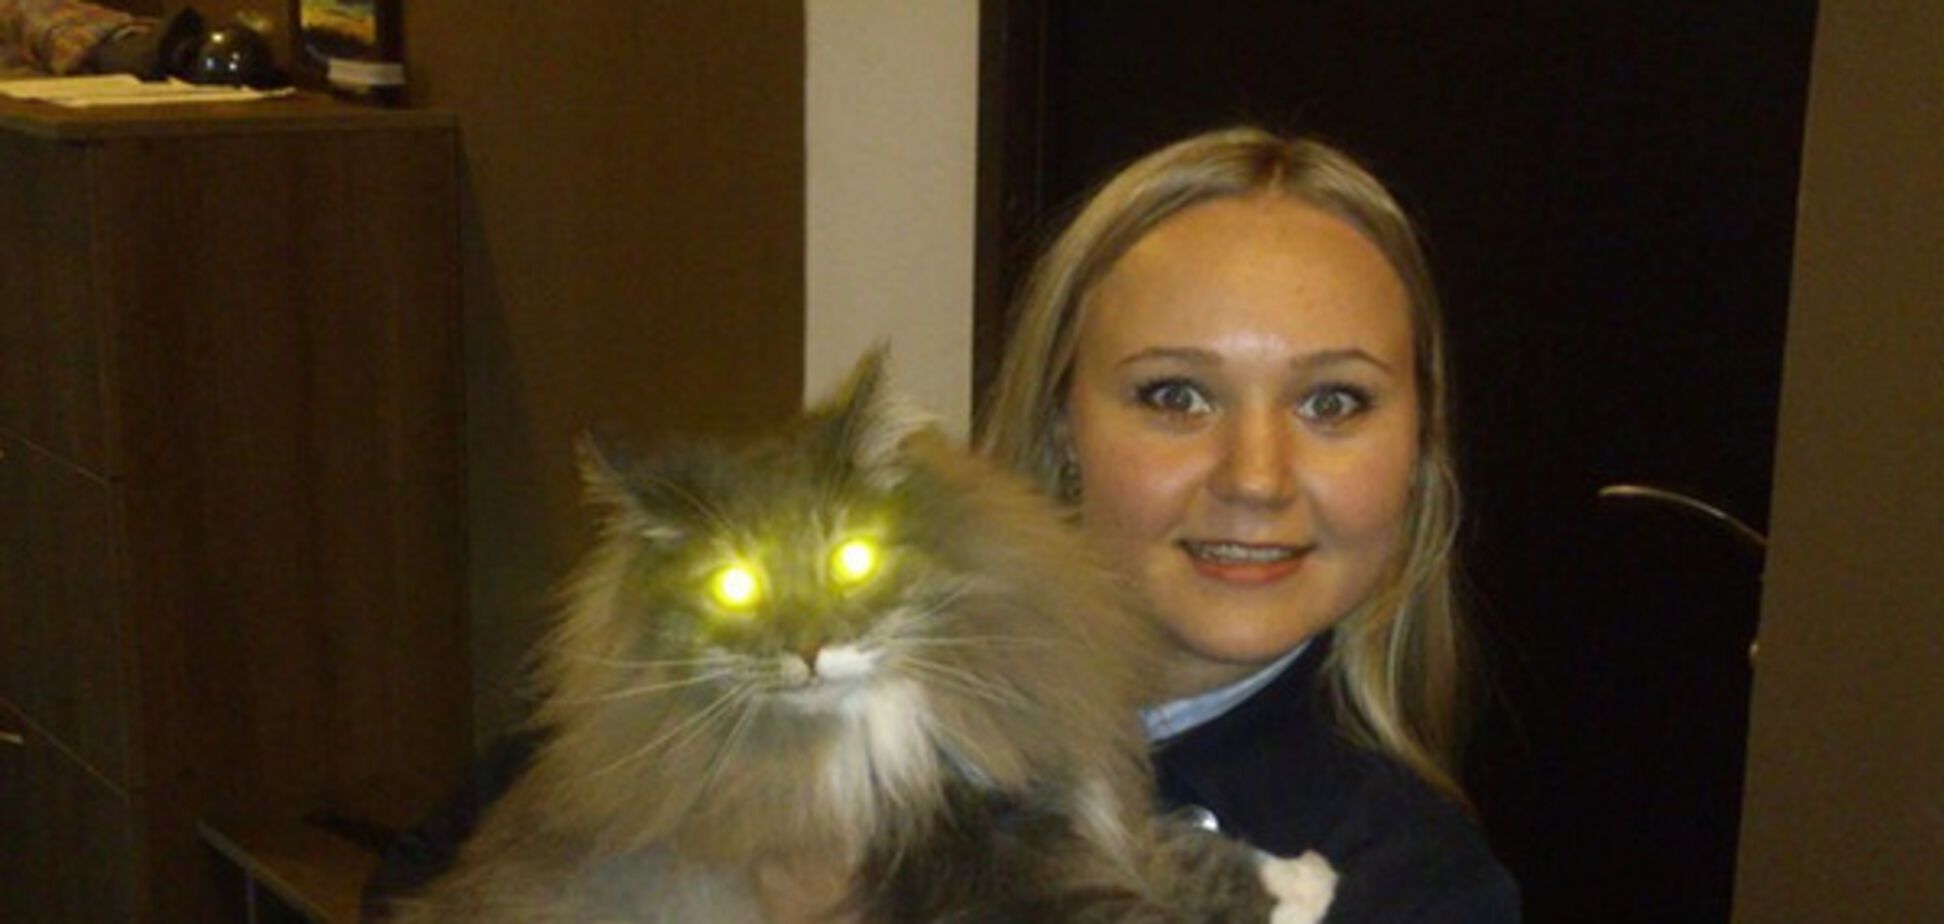 Выгуляю кота, постою в очереди, завезу домой: объявление киевлянки умилило интернет